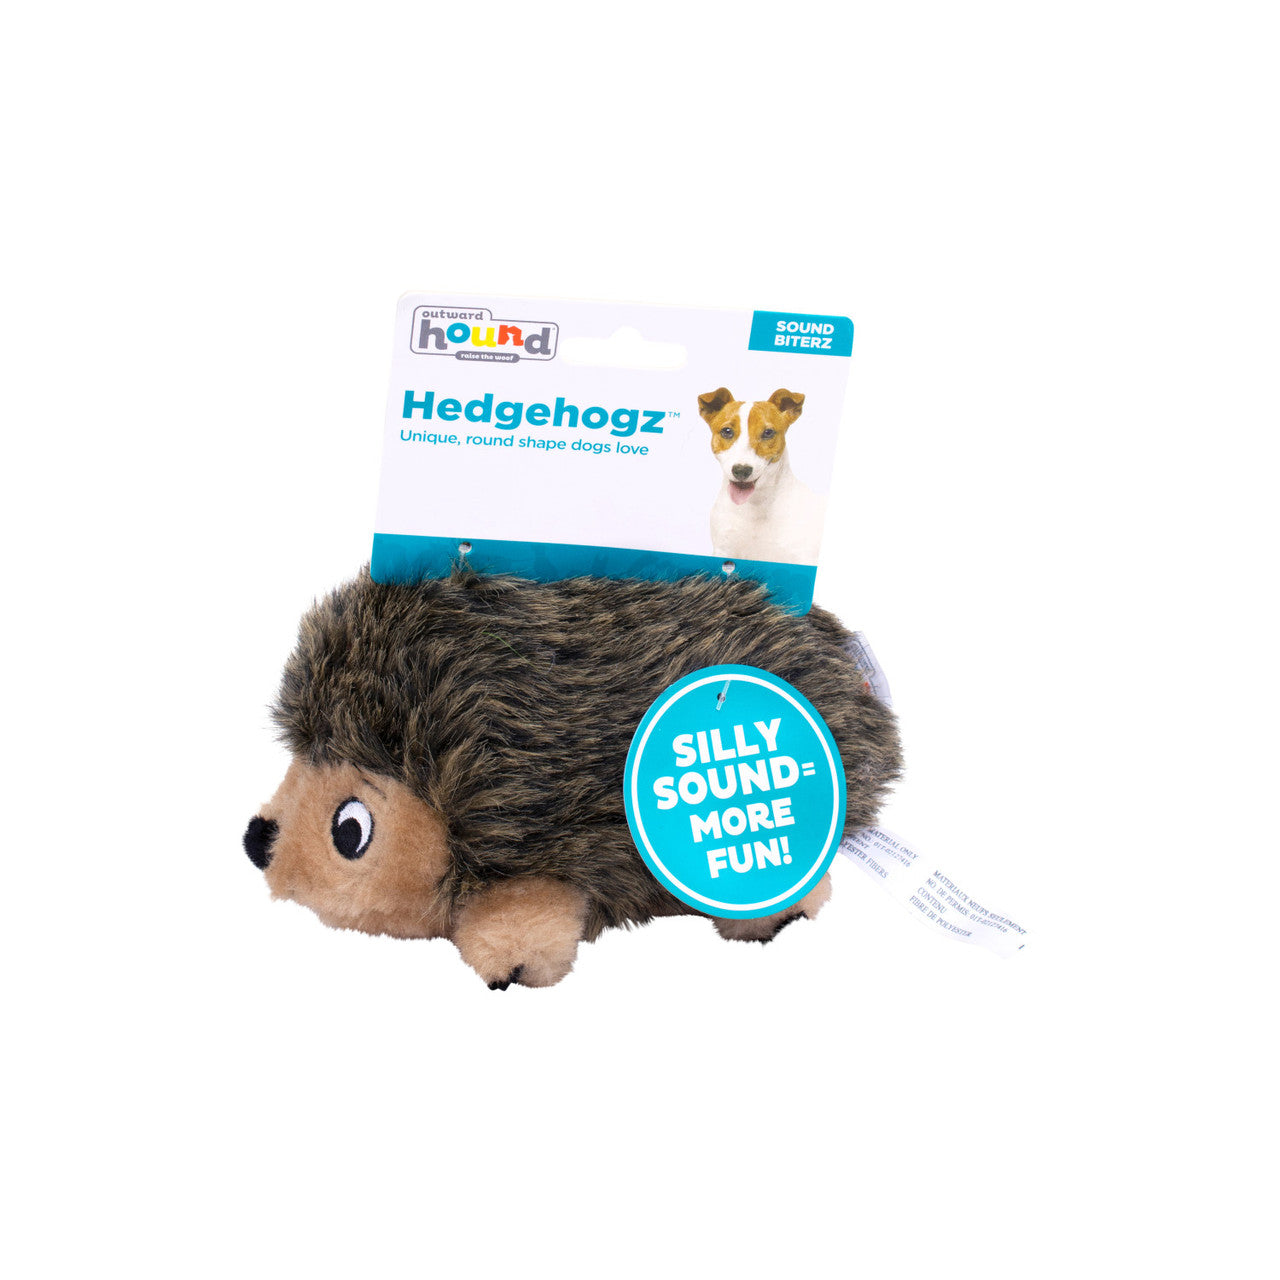 Outward Hound – Plush Hedgehogz